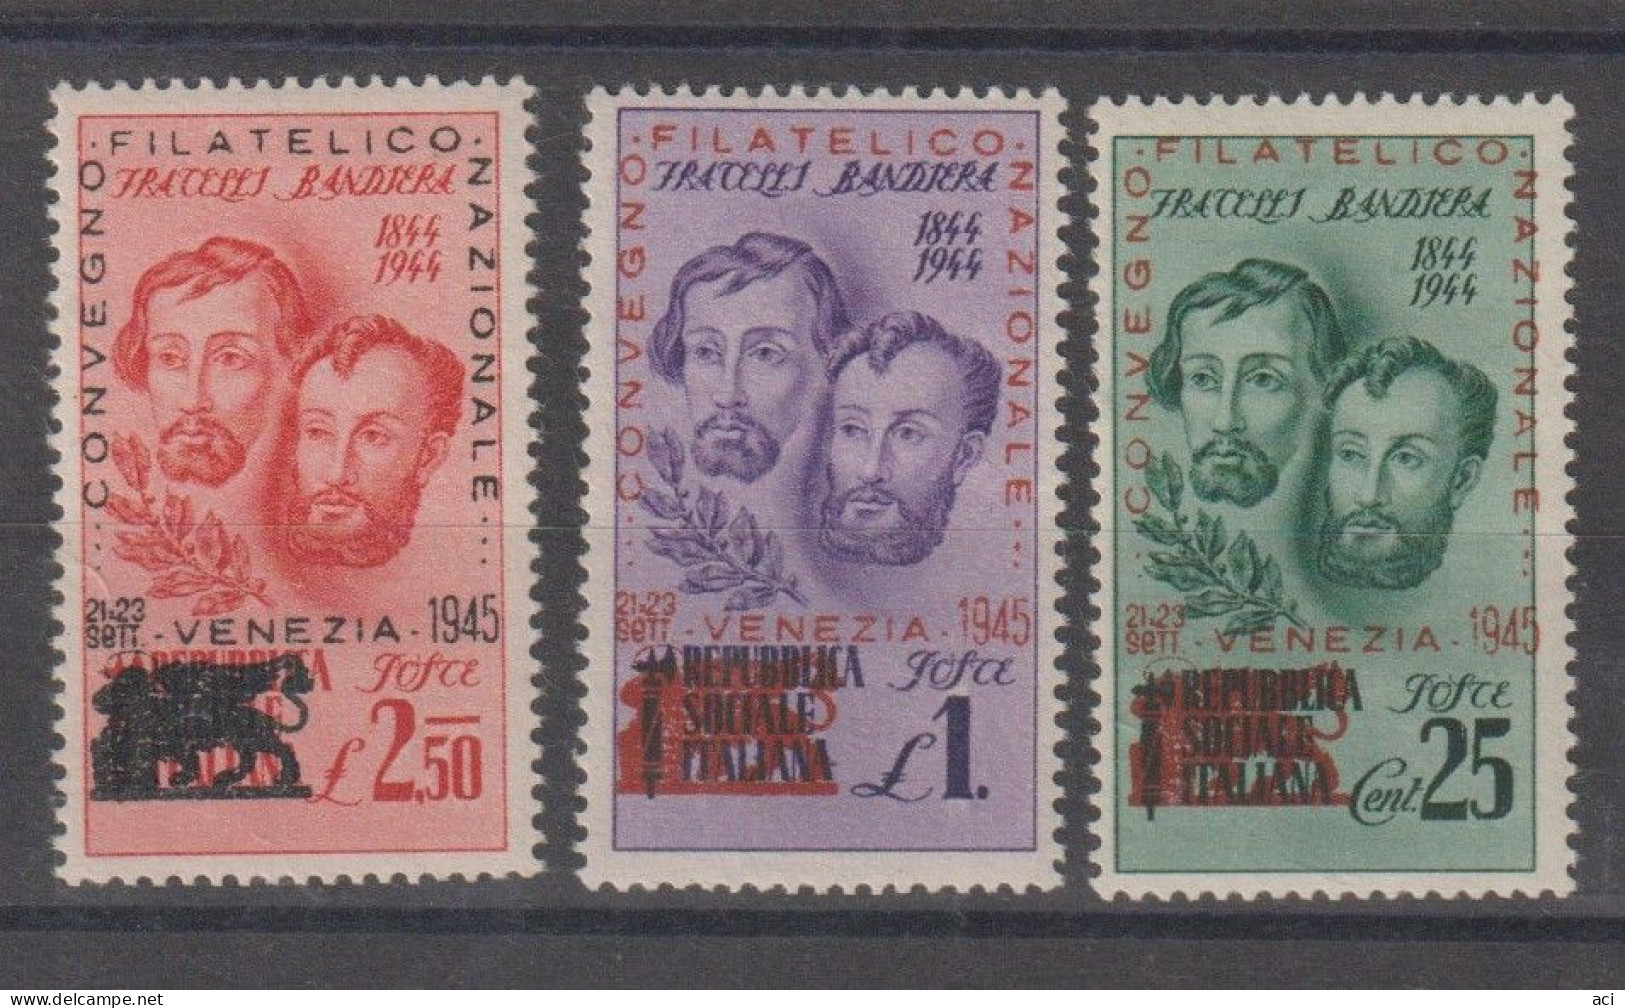 Italia Repubblica Sociale Italiana 1945 Fratelli Bandiera ,Congresso Filatelico Di Venezia,Nuovi, - Local And Autonomous Issues